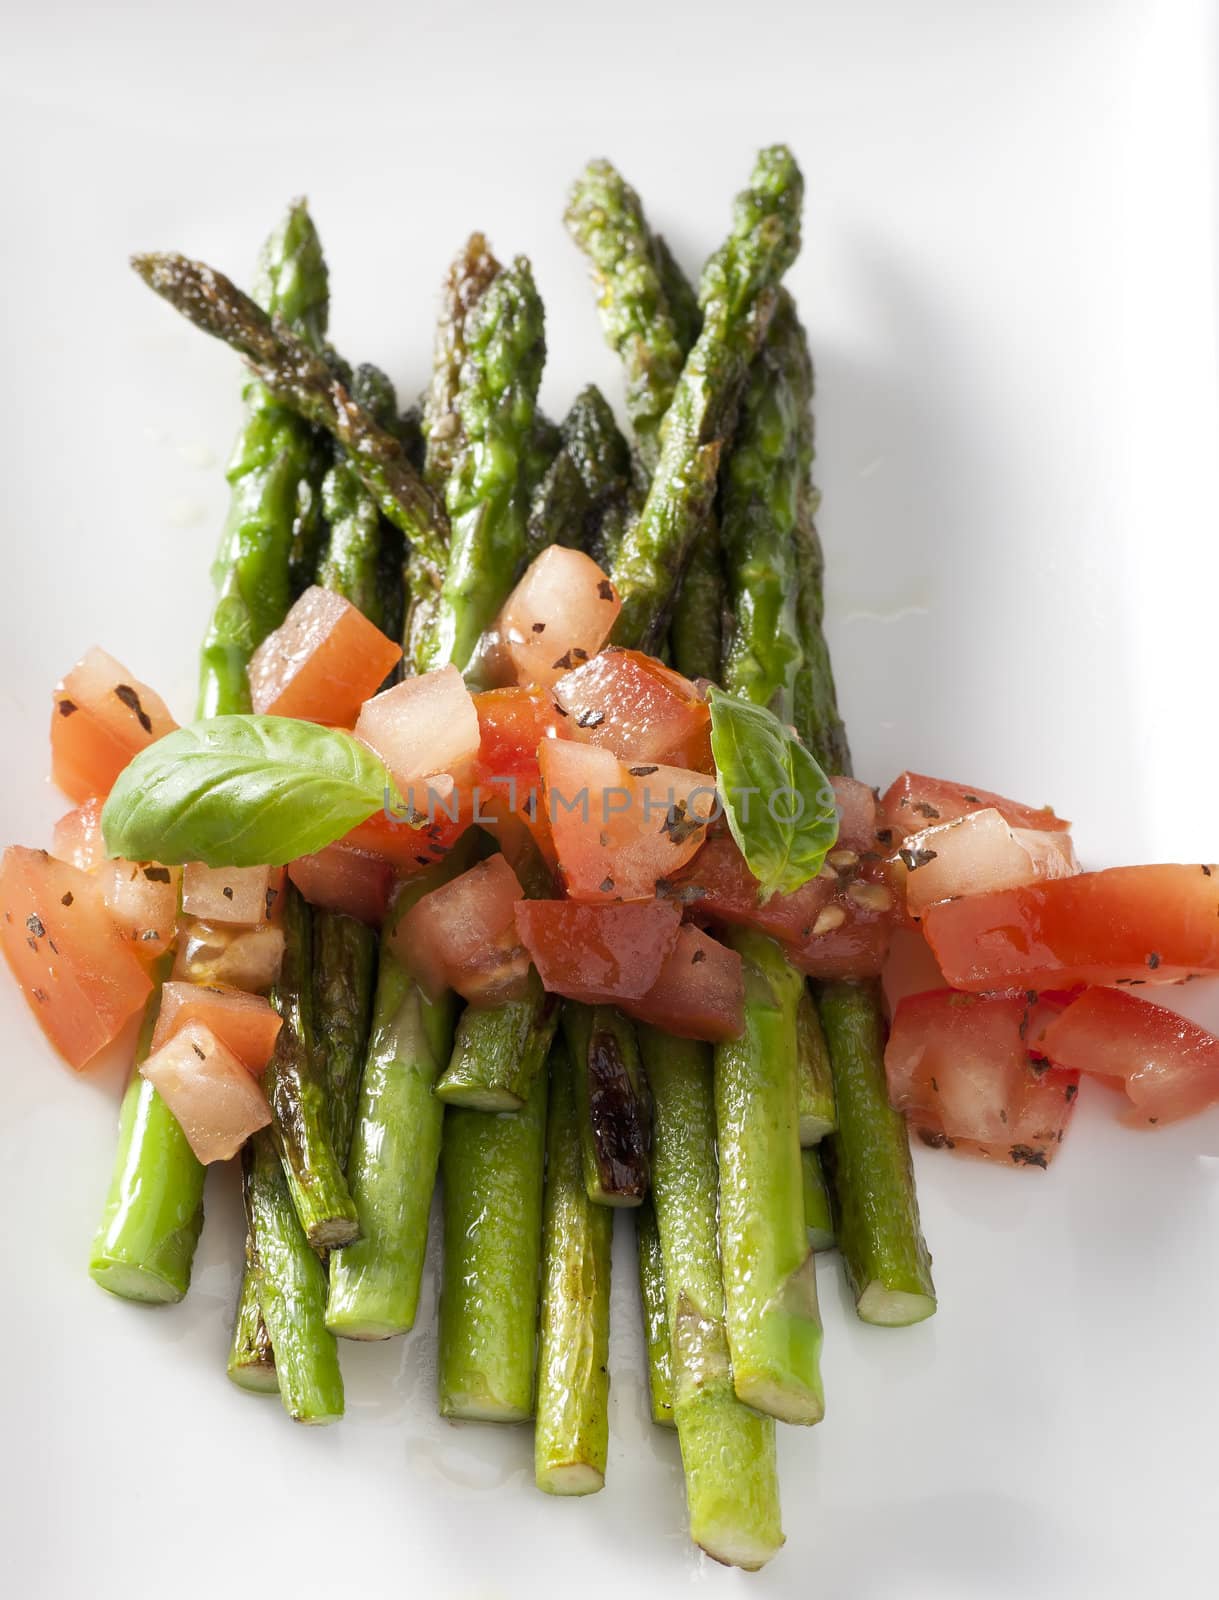 Asparagus Side Dish by charlotteLake